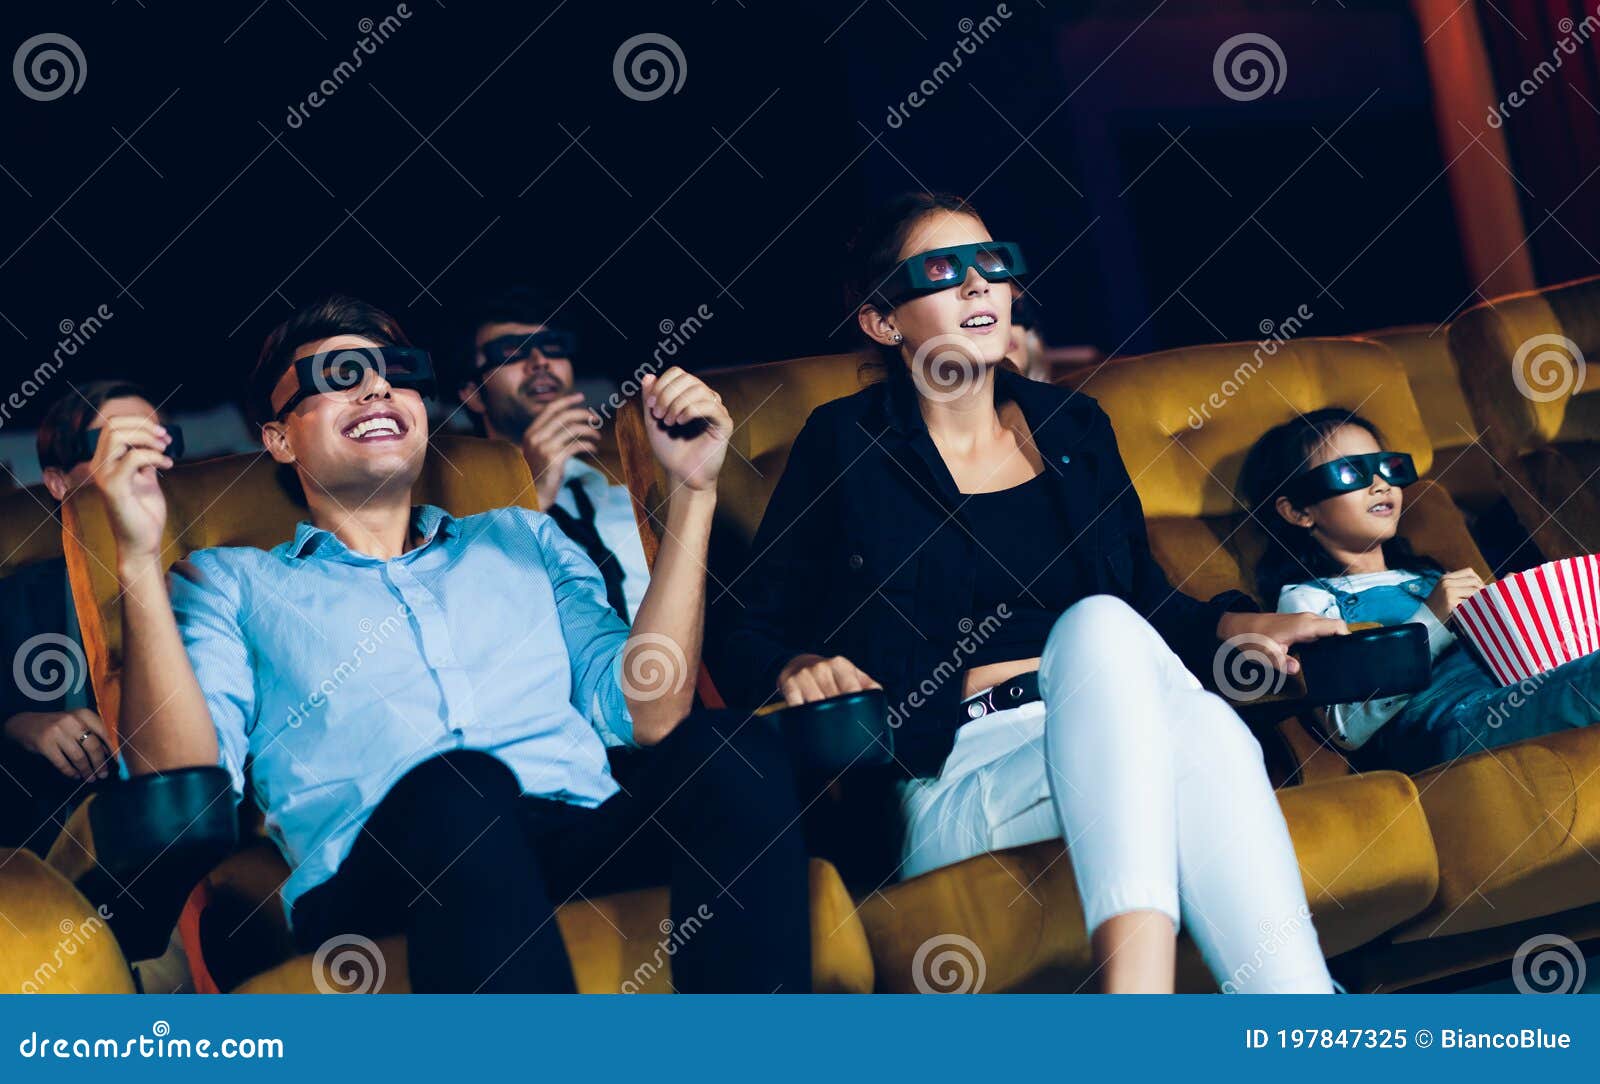 Смотреть фильм в 3d группы людей в театре кино Стоковое Изображение - изображение насчитывающей место, ощупывание: 197847325